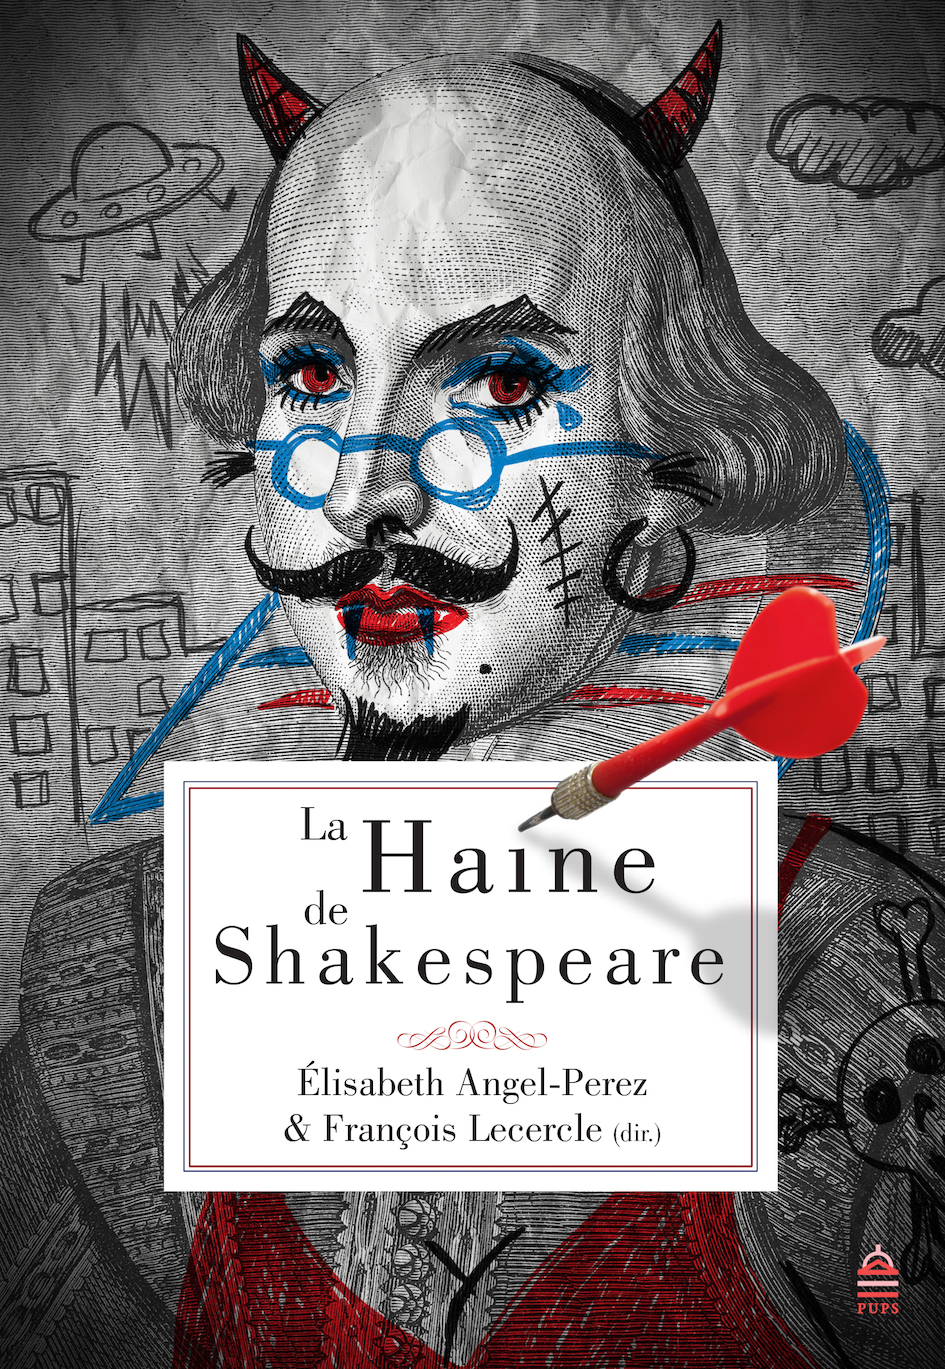 PAR: E. Angel-Perez et F. Lecercle, « La Haine de Shakespeare », 2017